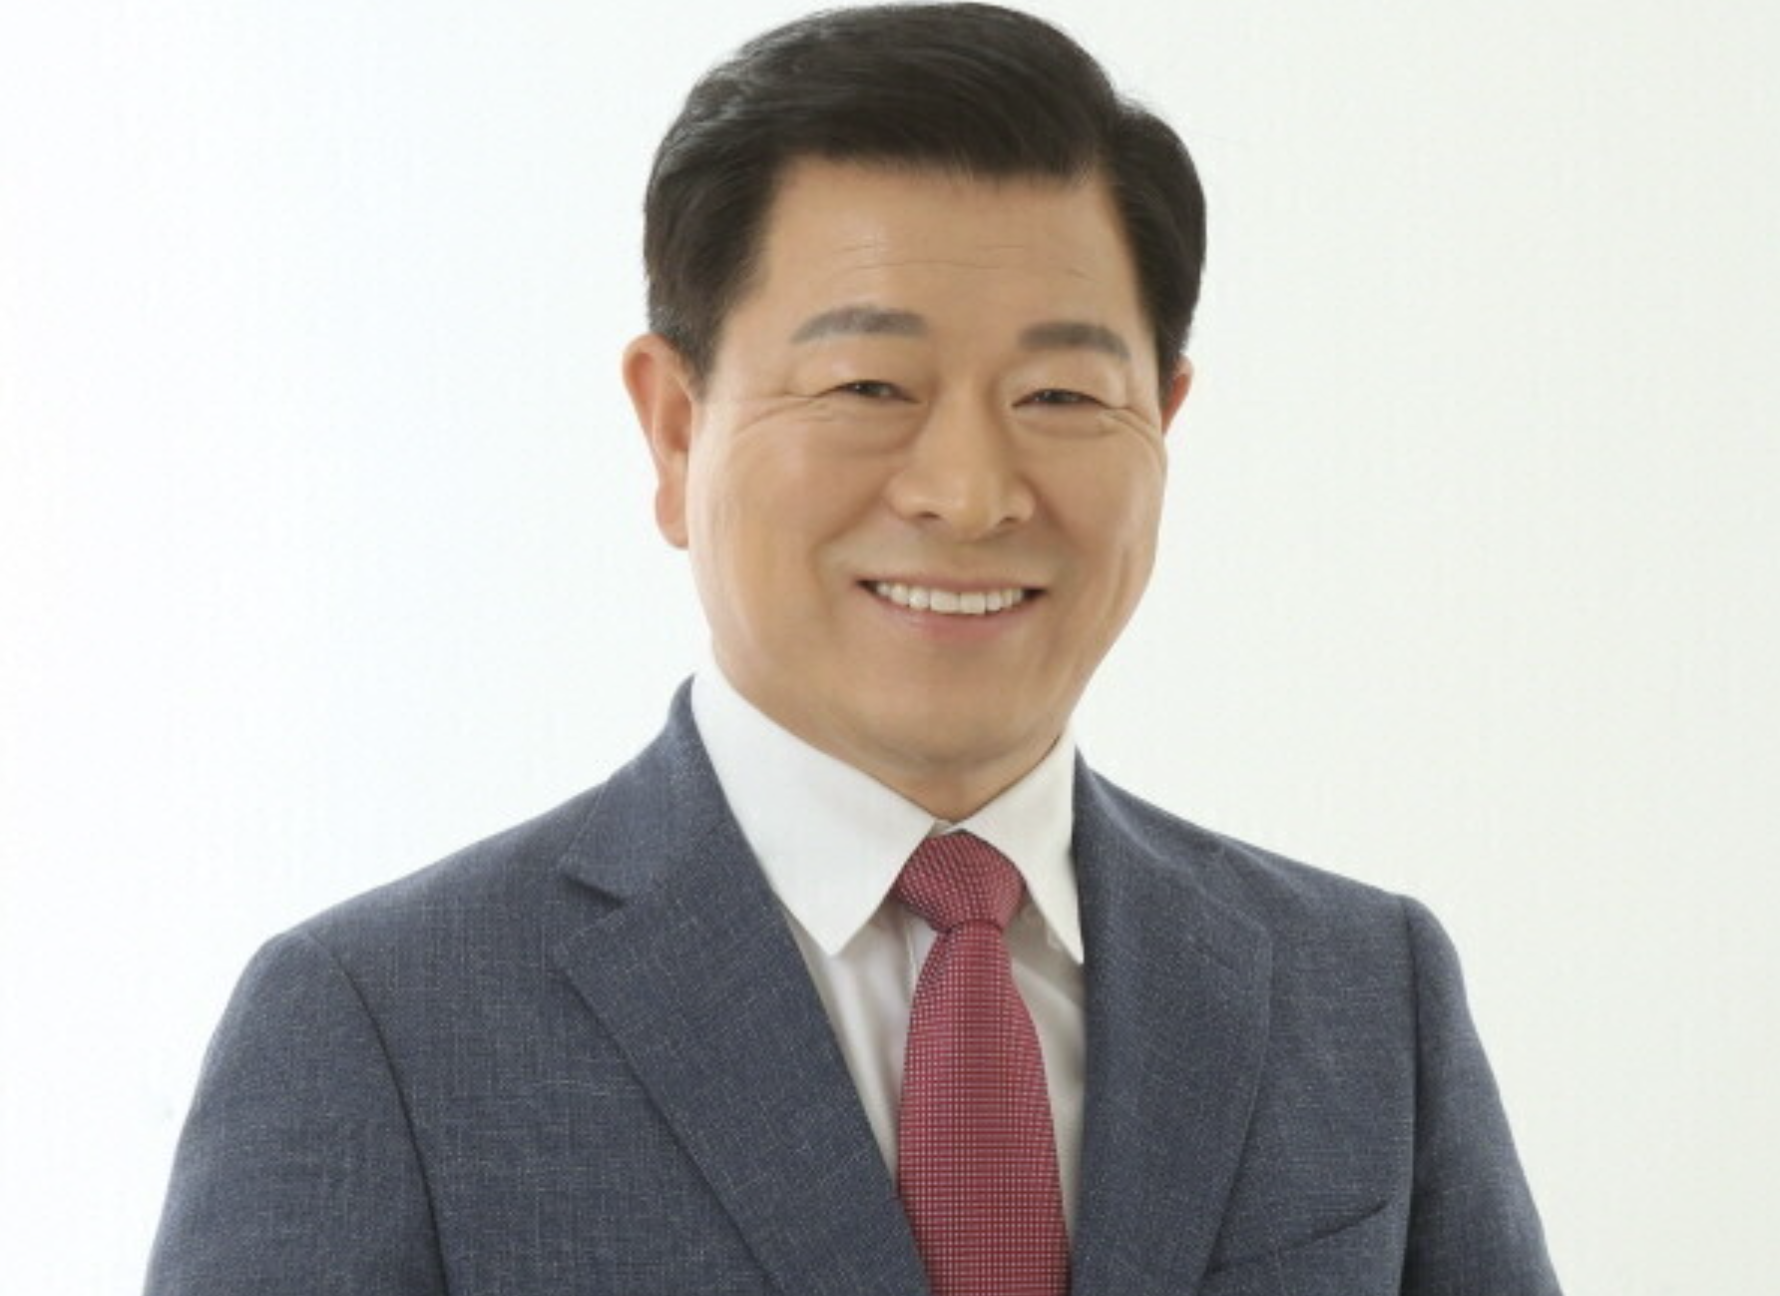 박승원 프로필